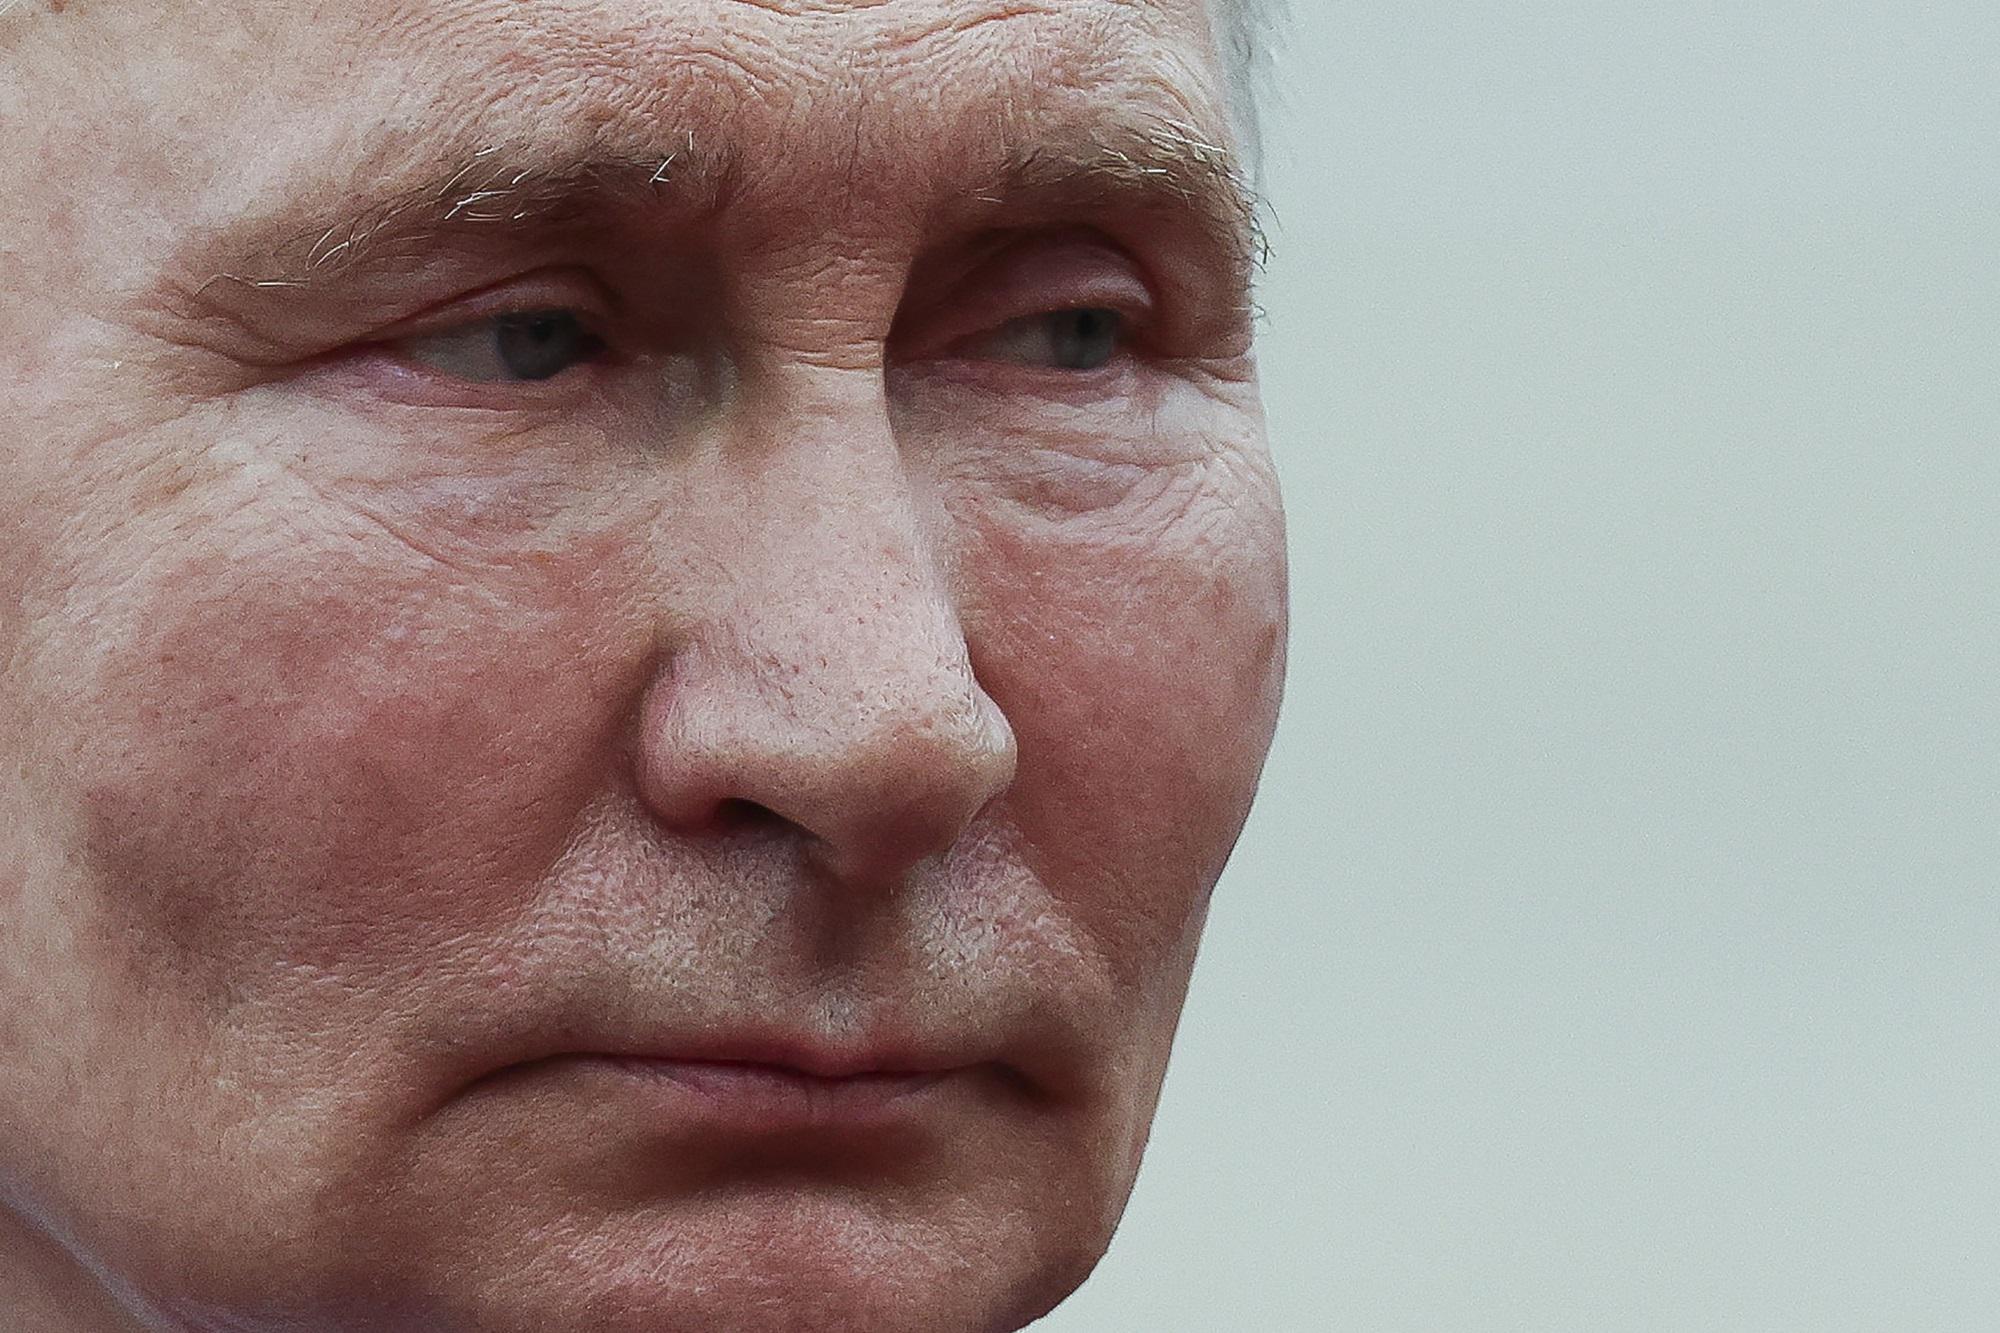 Russia - il messaggio di Putin: Possiamo rivedere la dottrina nucleare